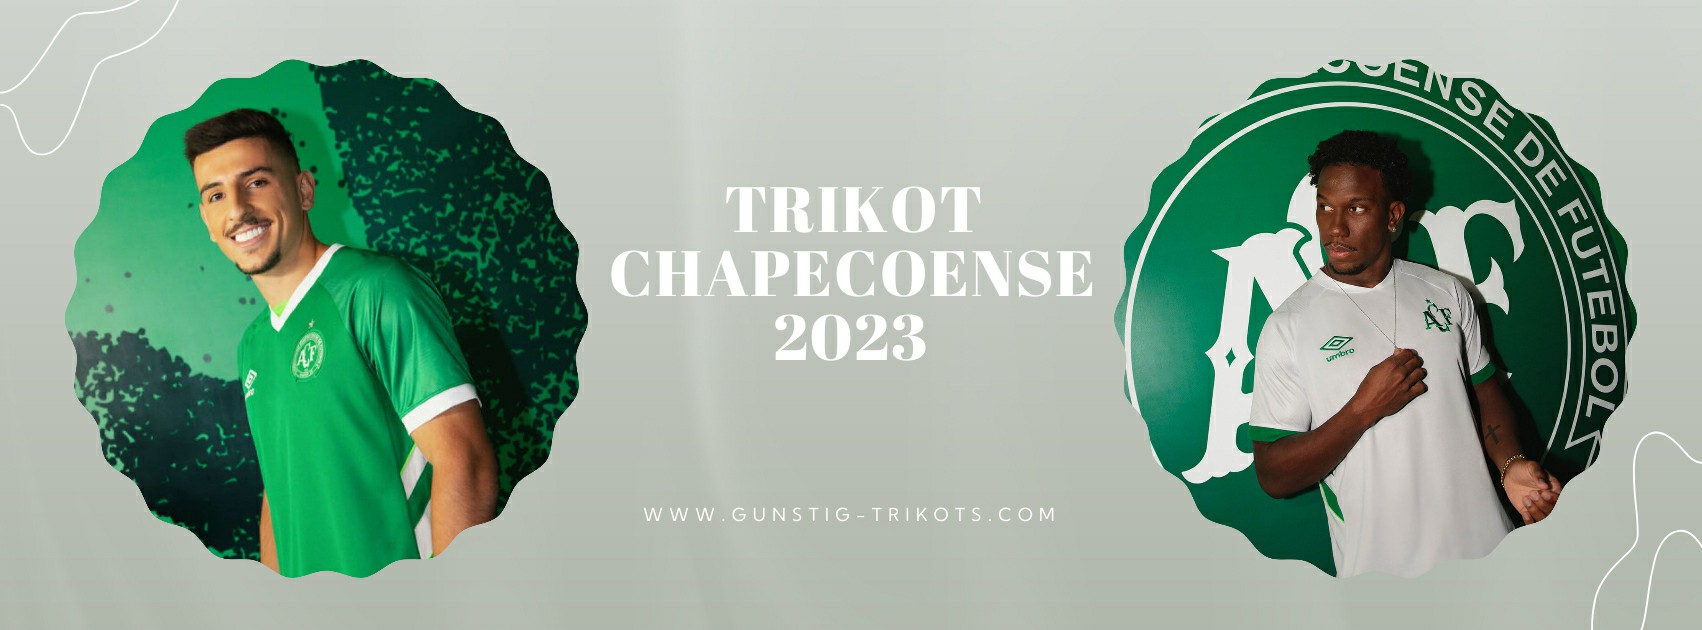 Chapecoense Trikot 2023-2024